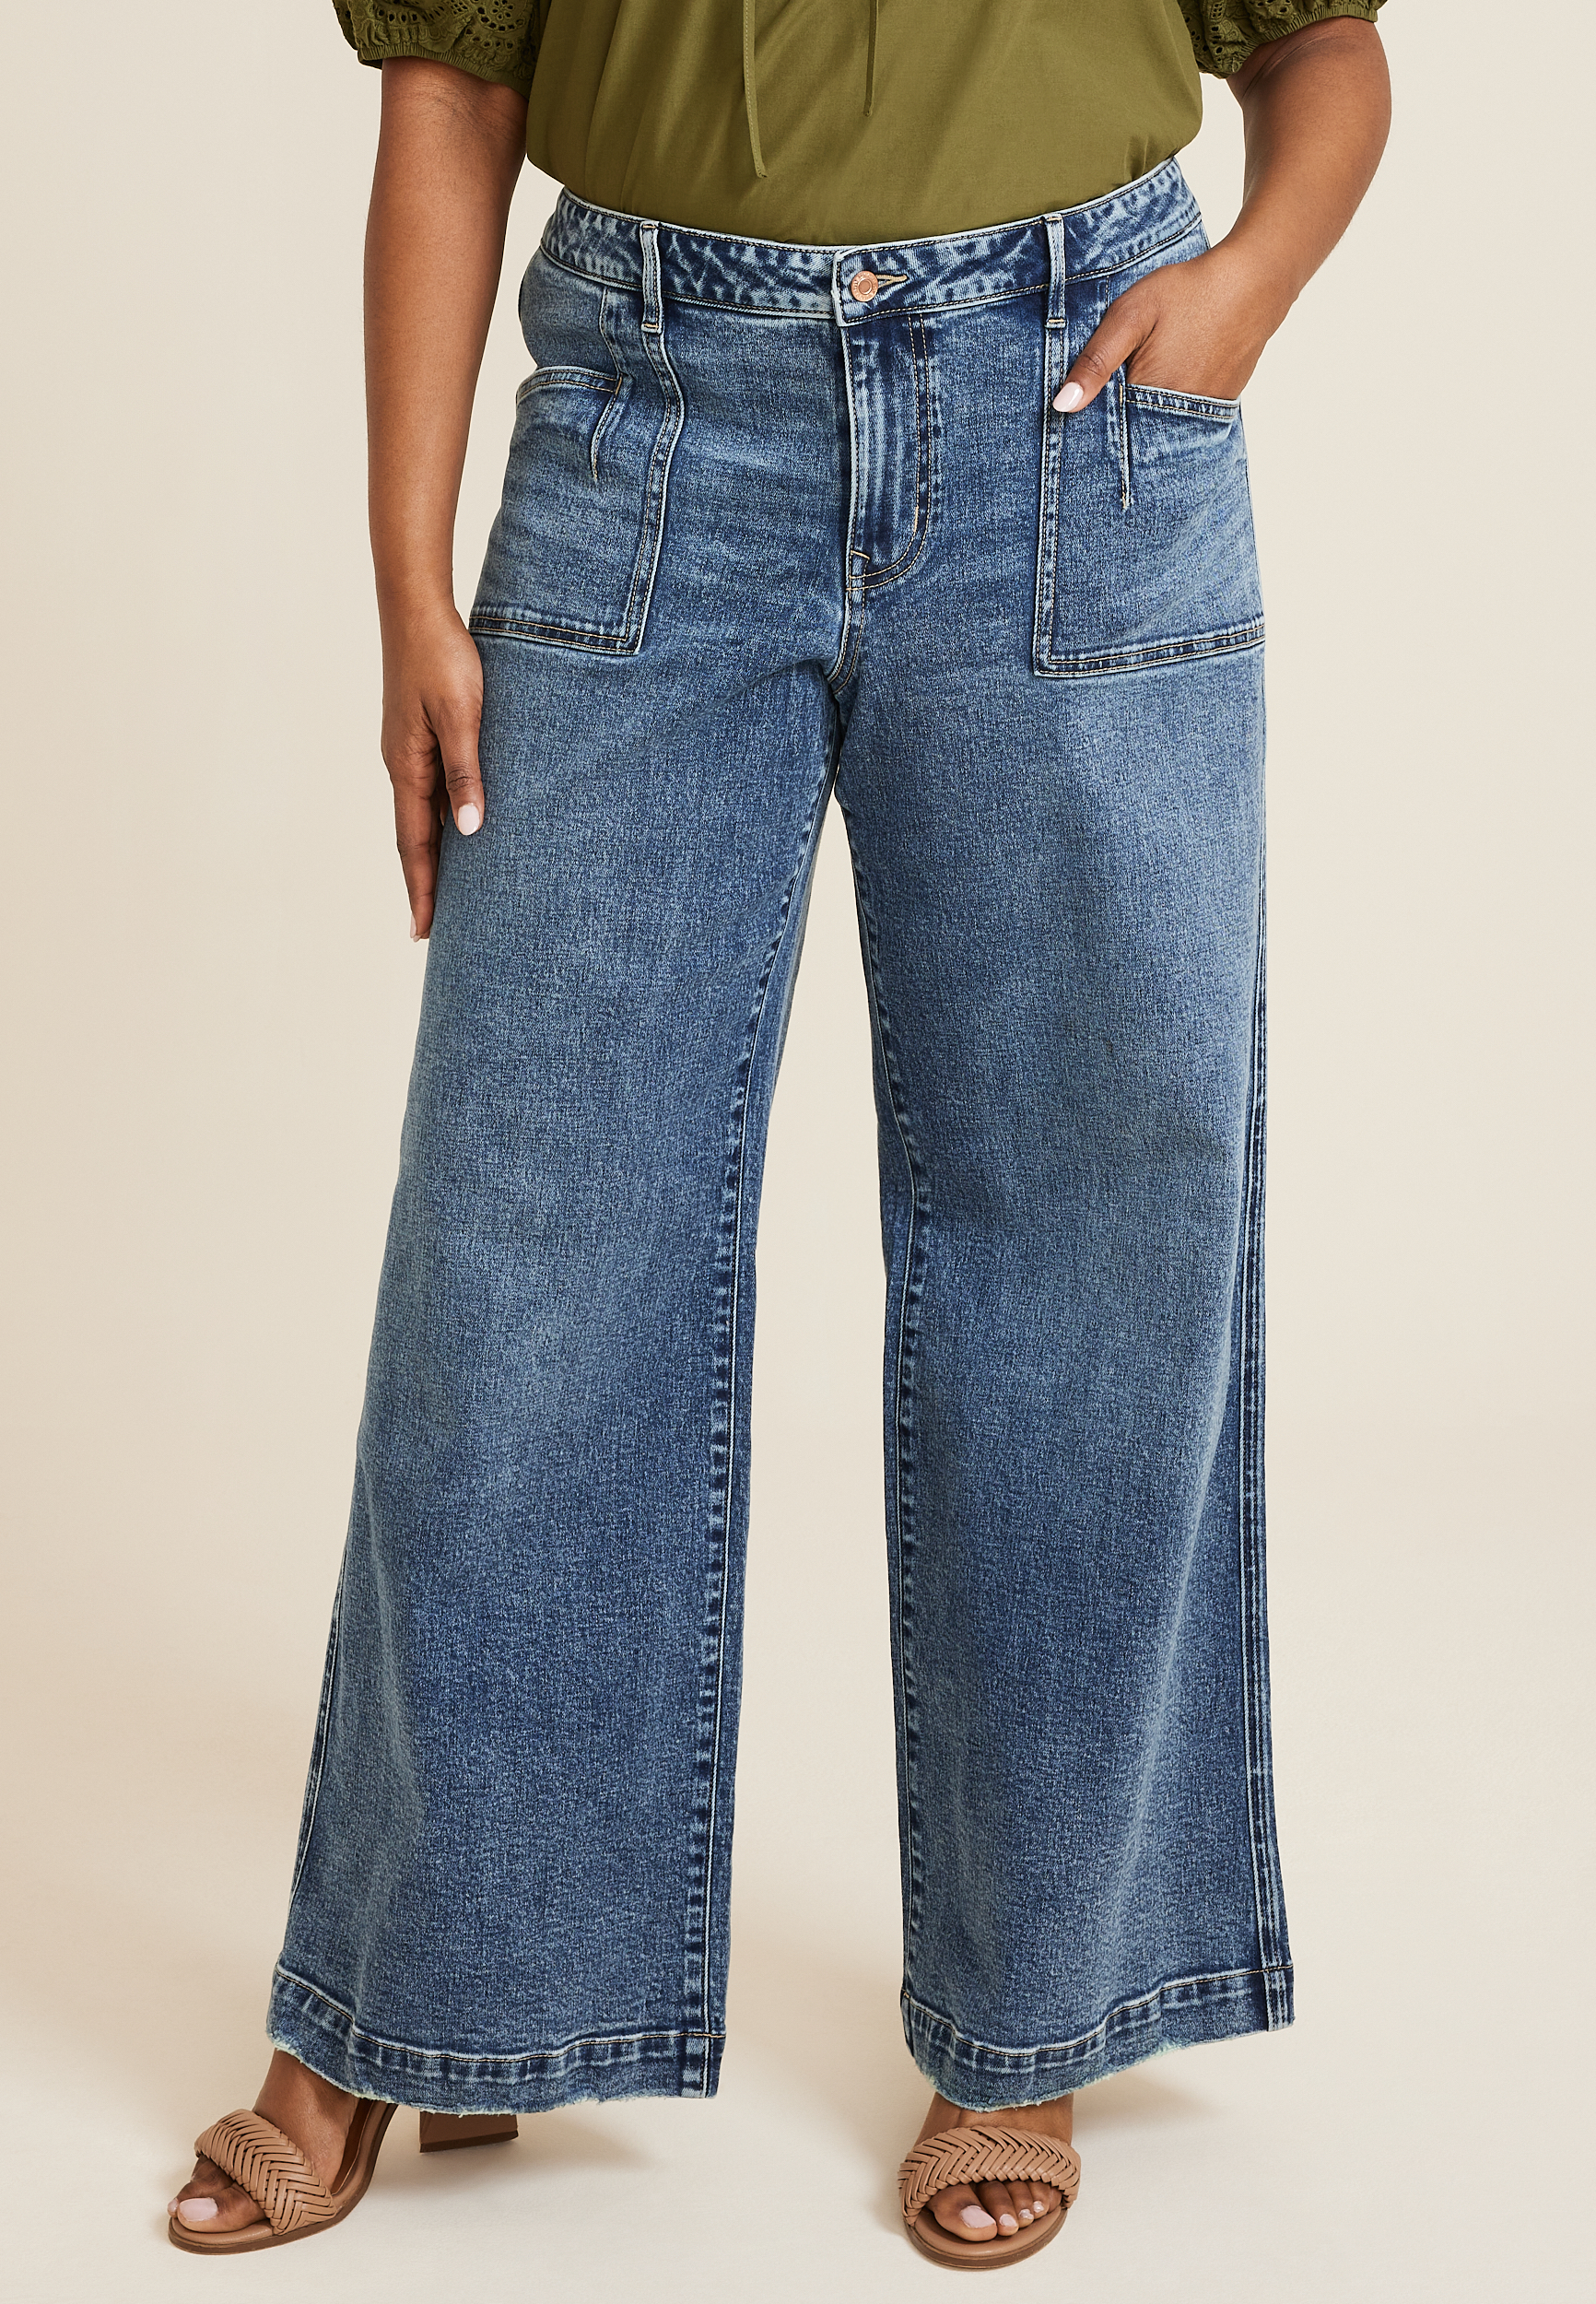 Terra & Sky Women's Plus Size Jegging Jeans, 28 Inseam 